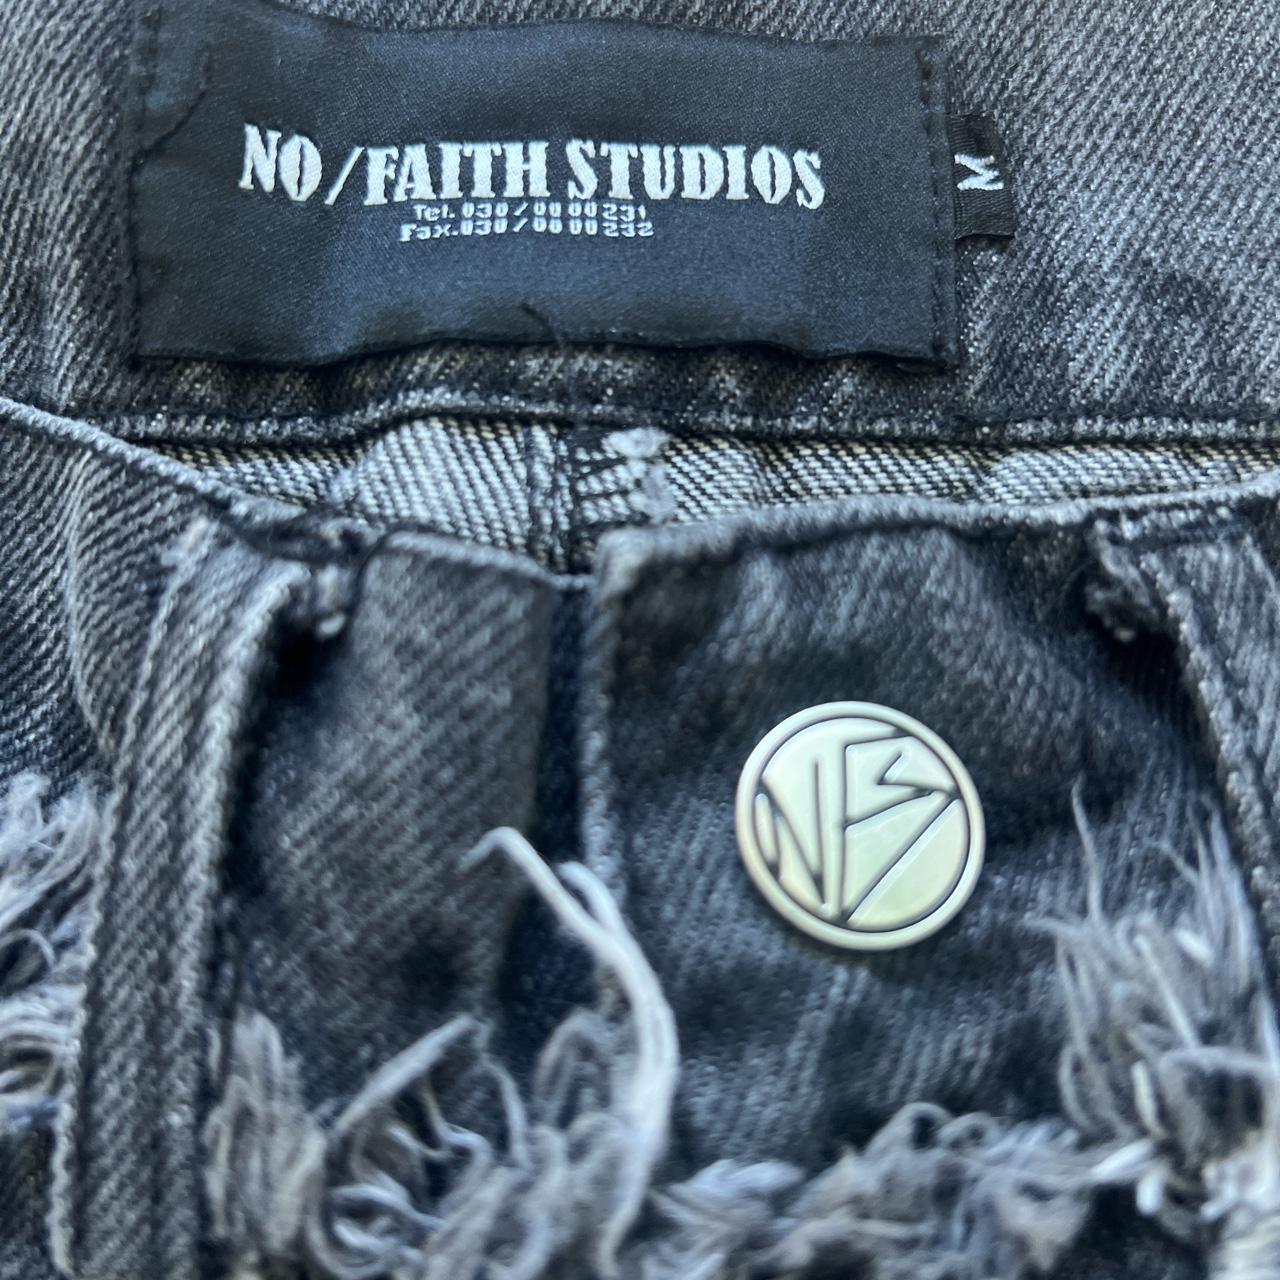 No faith-studios - Depop